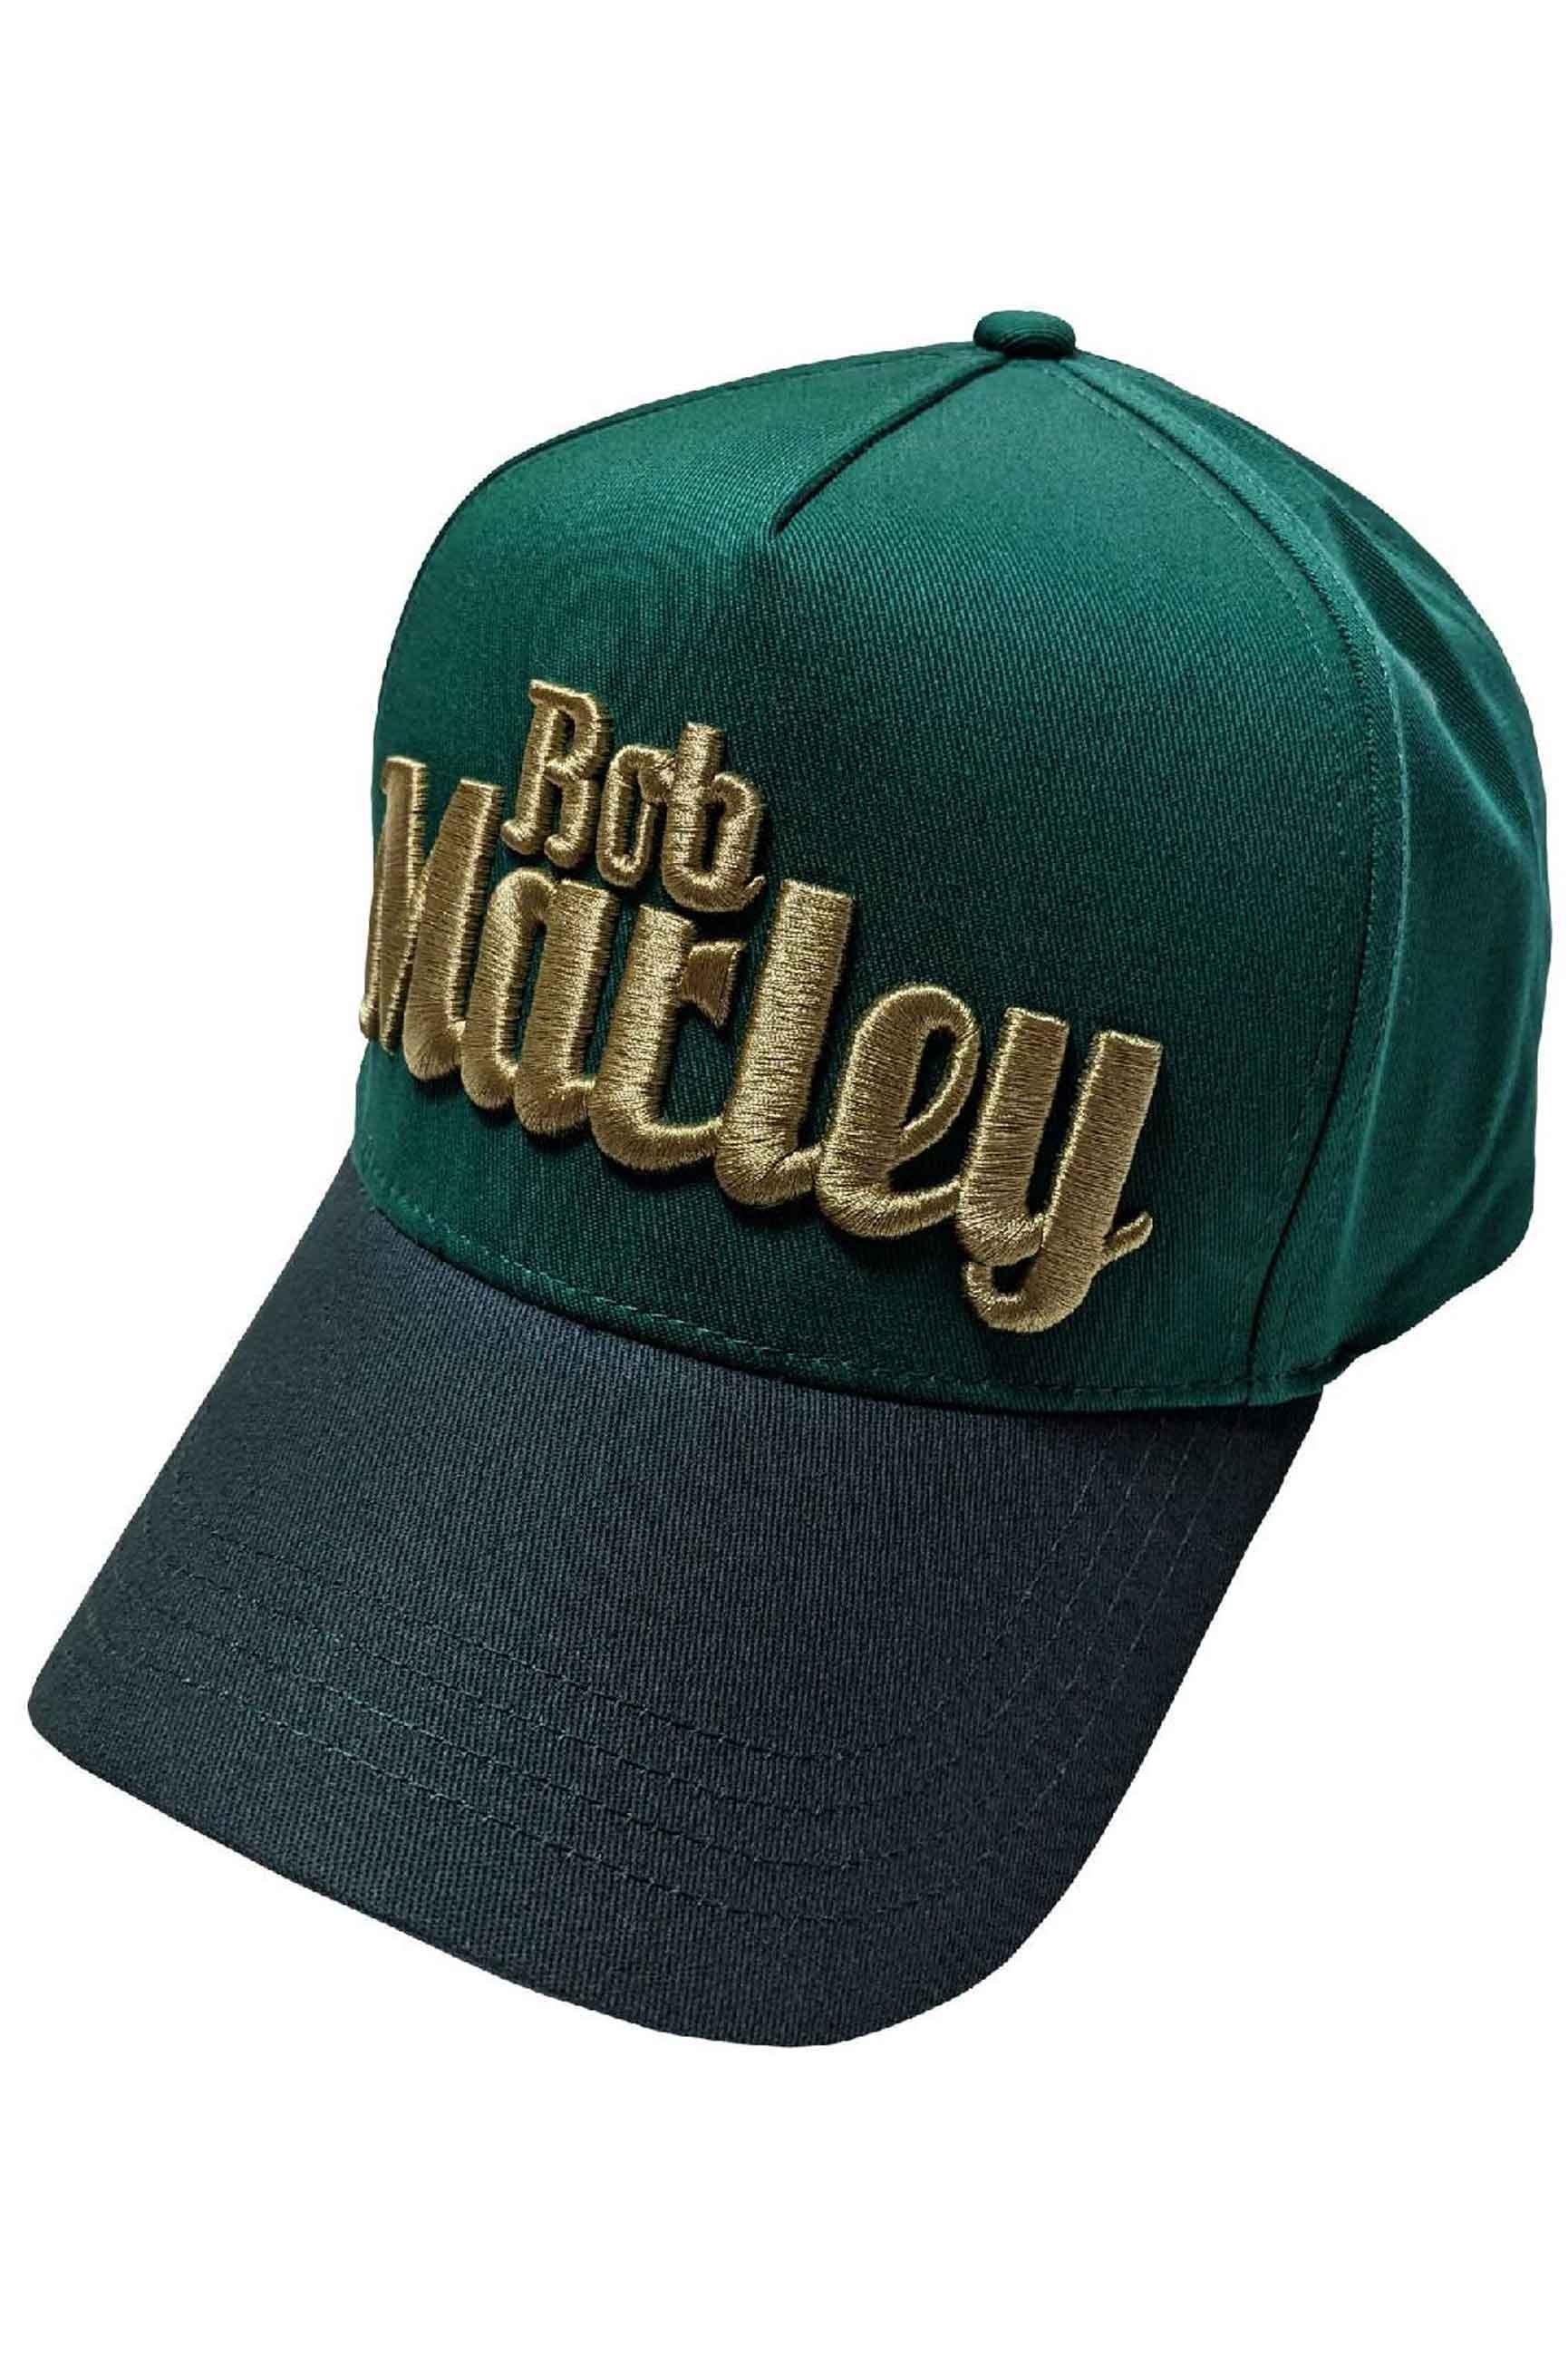 цена Бейсбольная кепка Trucker с текстовым логотипом Bob Marley, зеленый